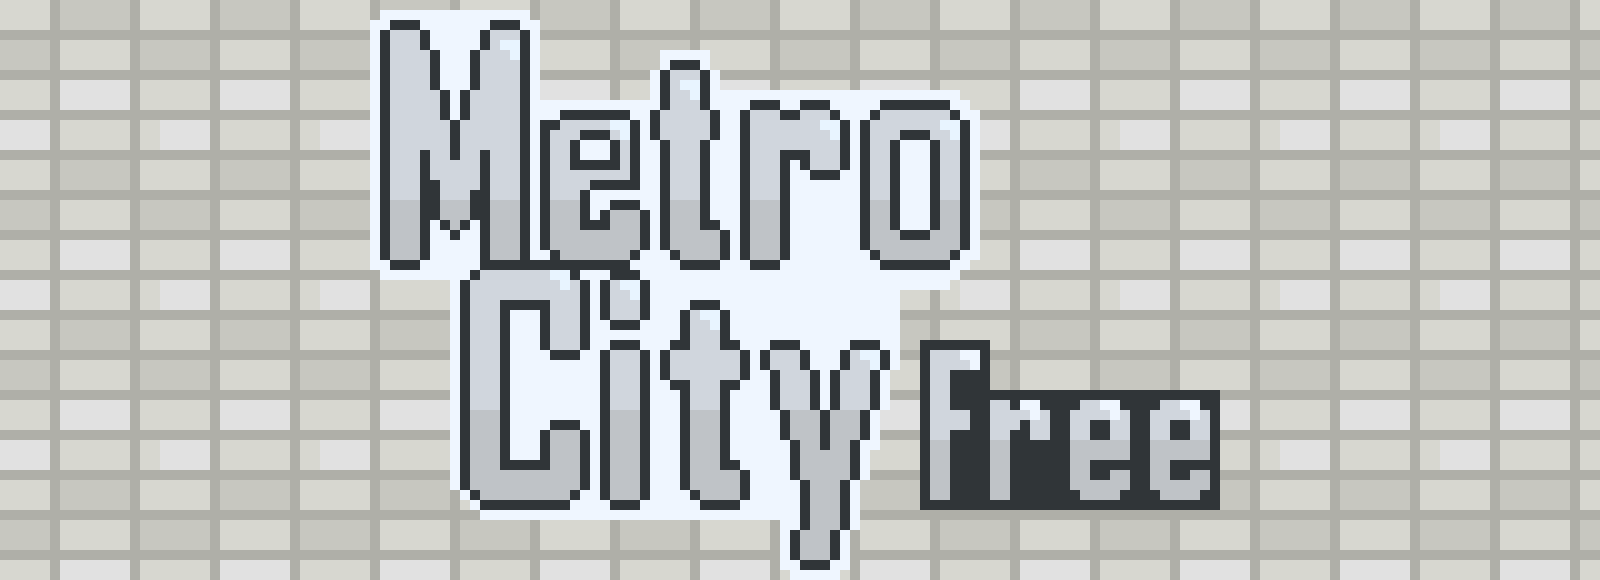 MetroCity - Free External Top Down Environment Asset Pack